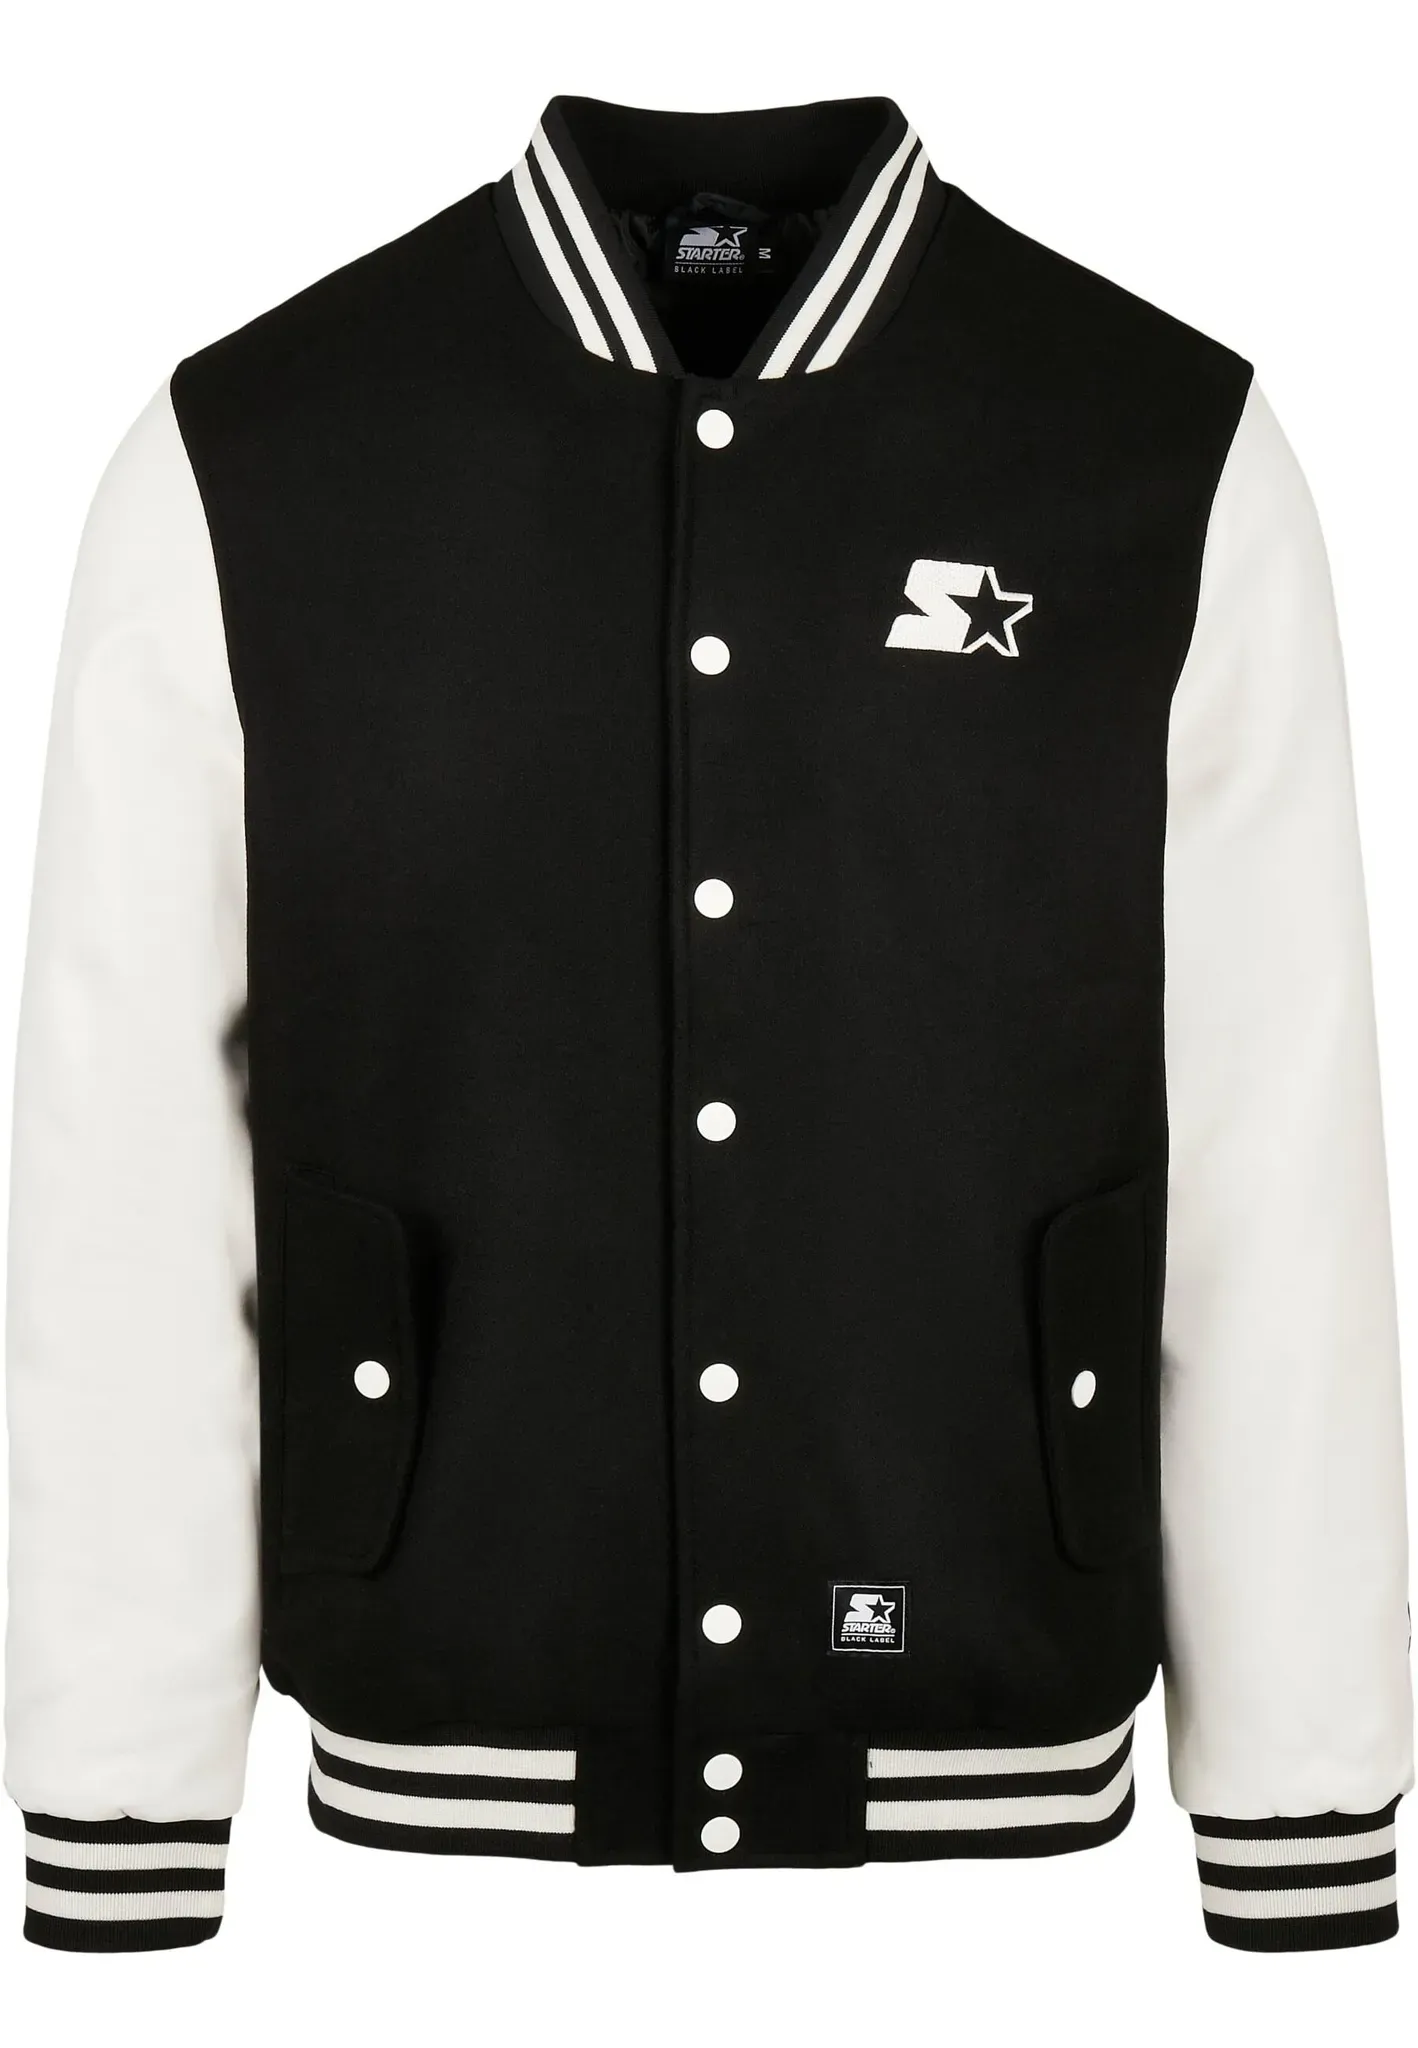 Collegejacke STARTER BLACK LABEL "Herren Starter College Jacket" Gr. XXL, schwarz-weiß (black, white) Herren Jacken Übergangsjacken